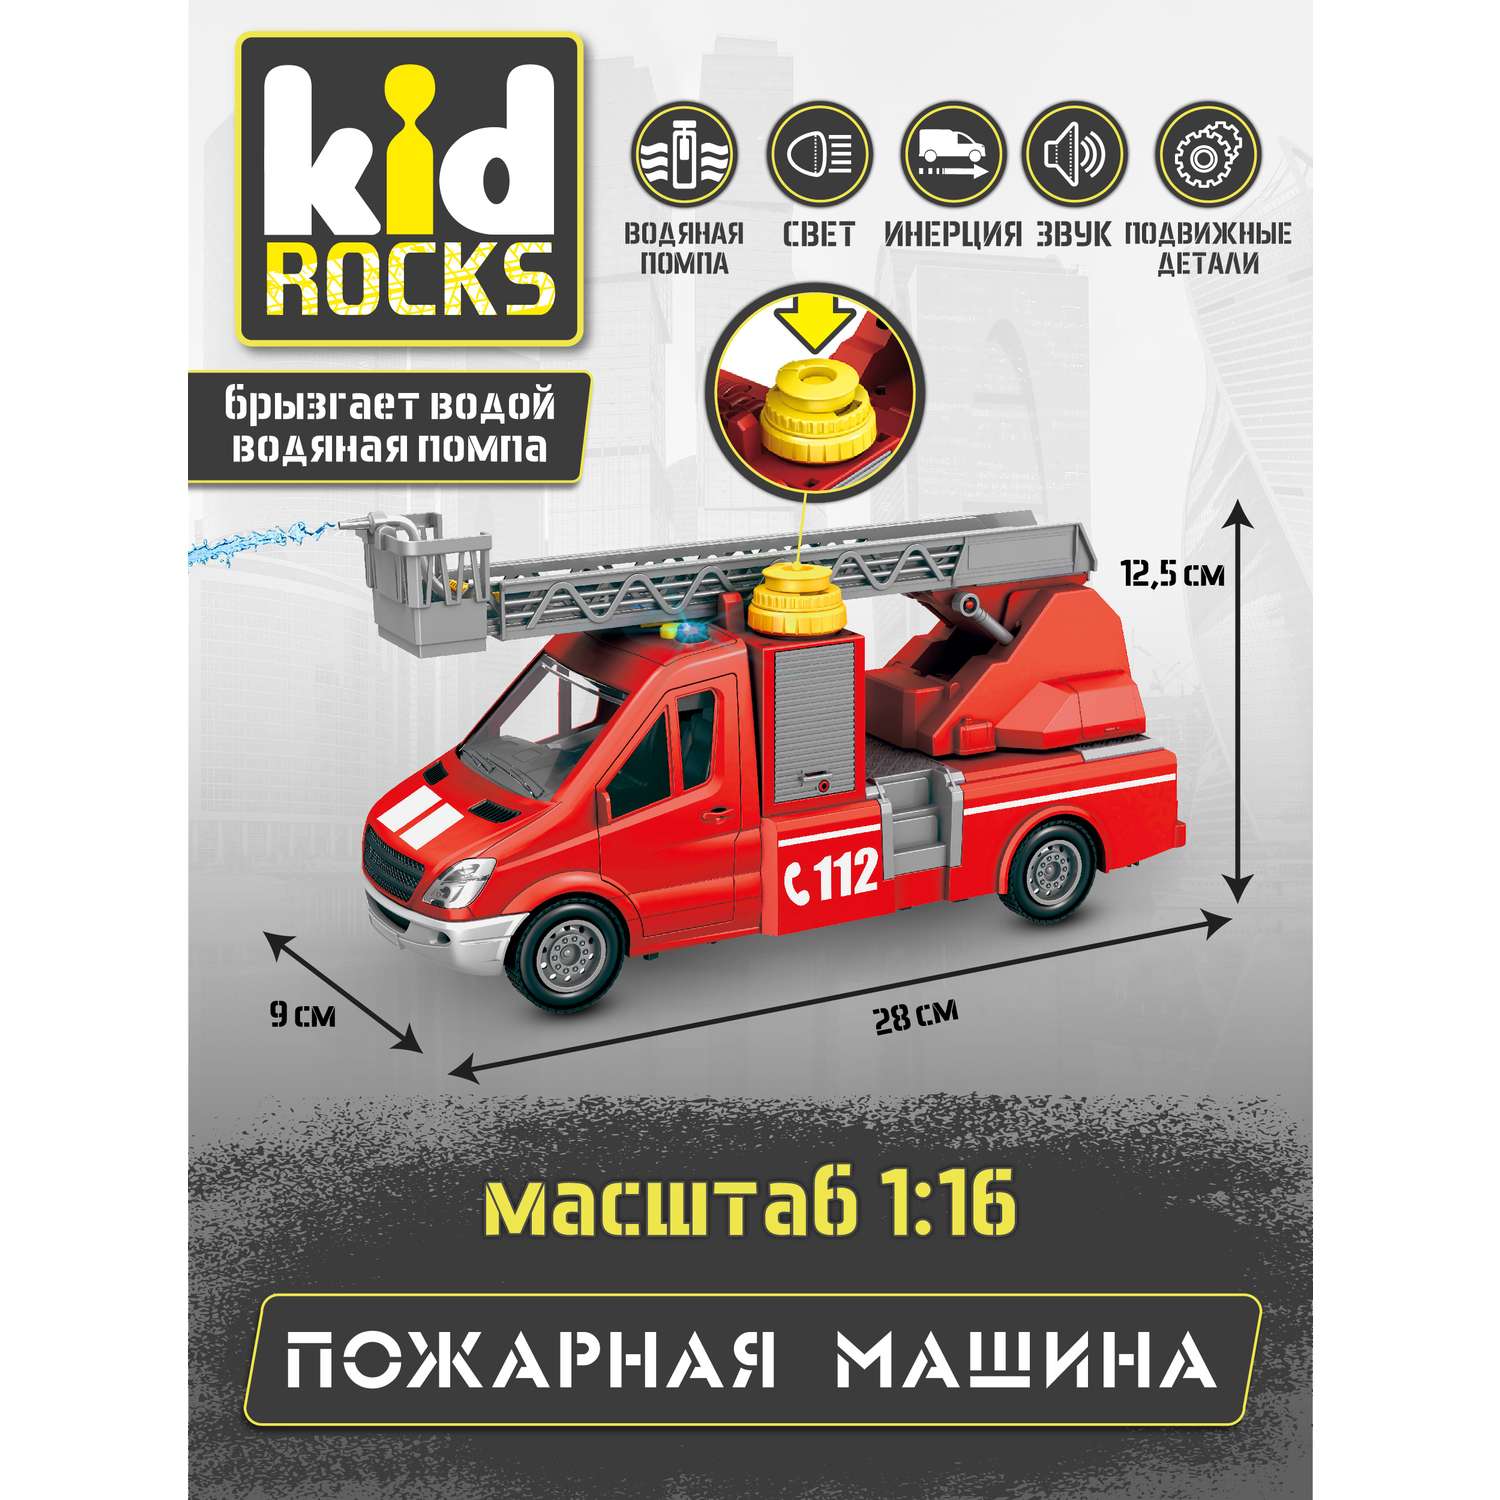 Модель Kid Rocks Пожарная машина масштаб 1:16 со звуком и светом AB-2127 - фото 5